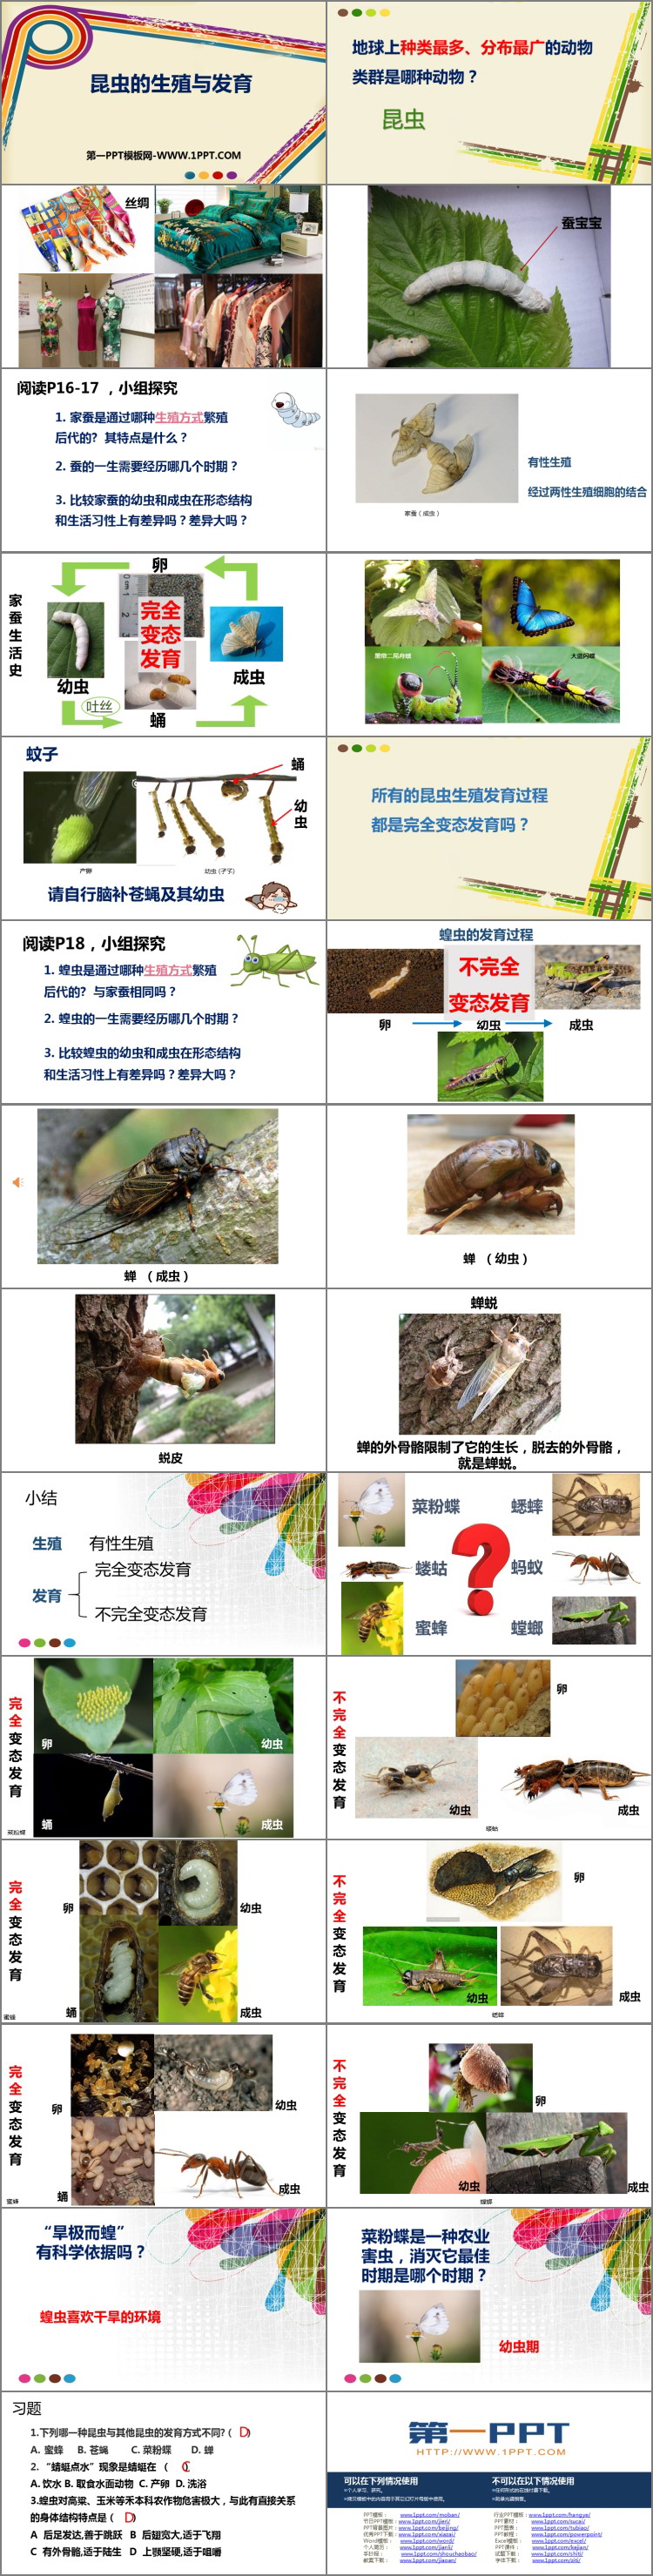 《昆虫的生殖与发育》PPT免费课件-预览图02